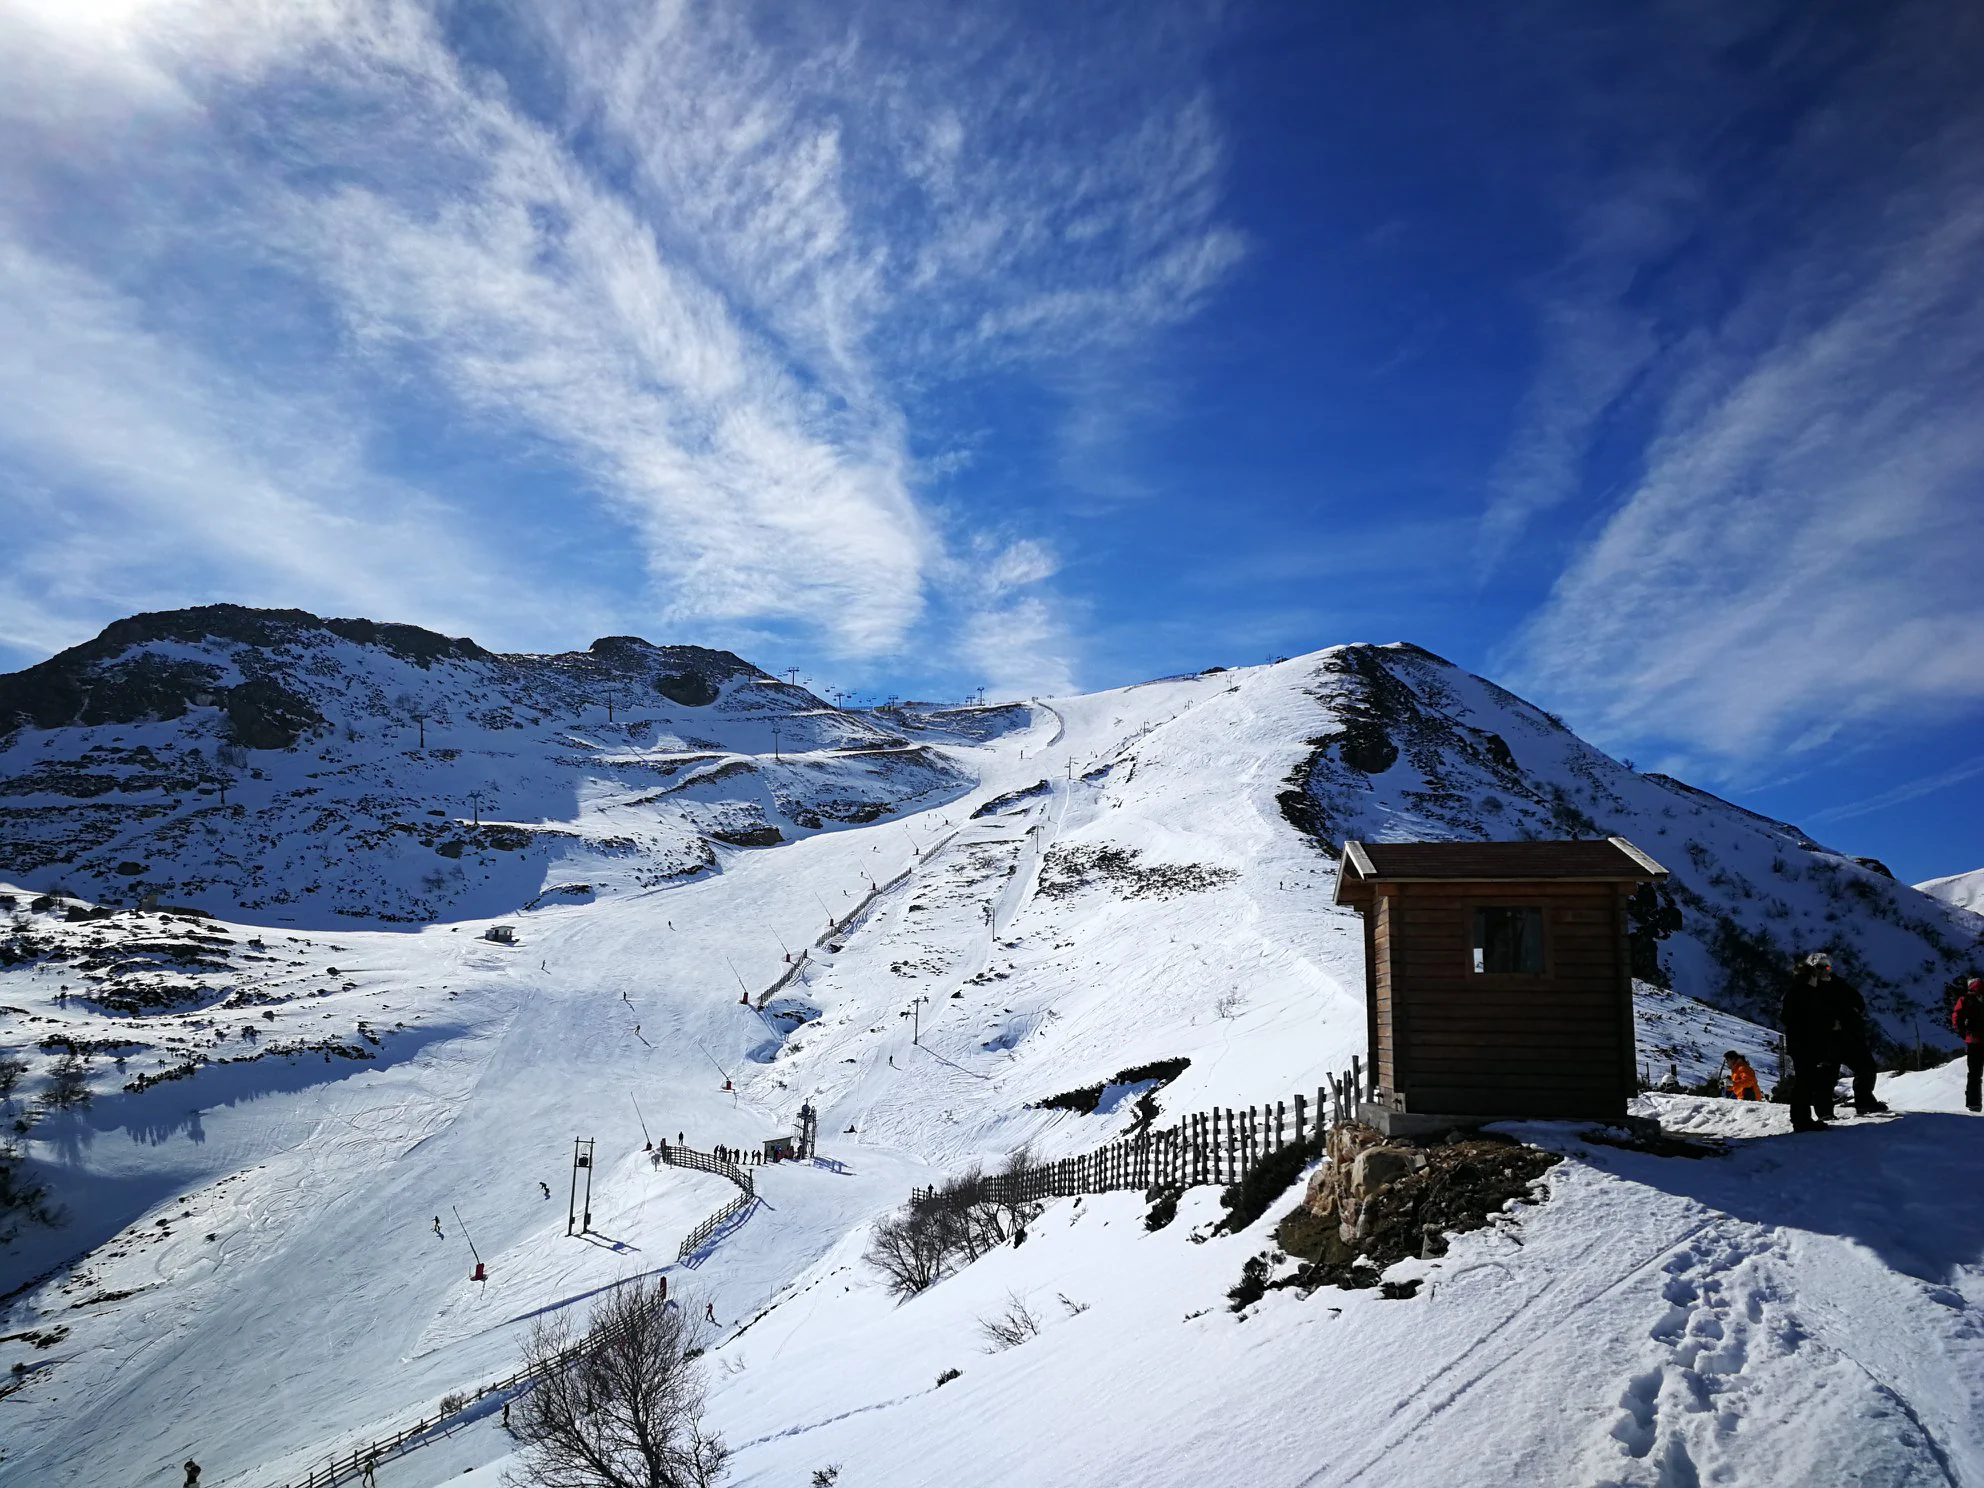 Continúa el buen momento de la nieve asturiana